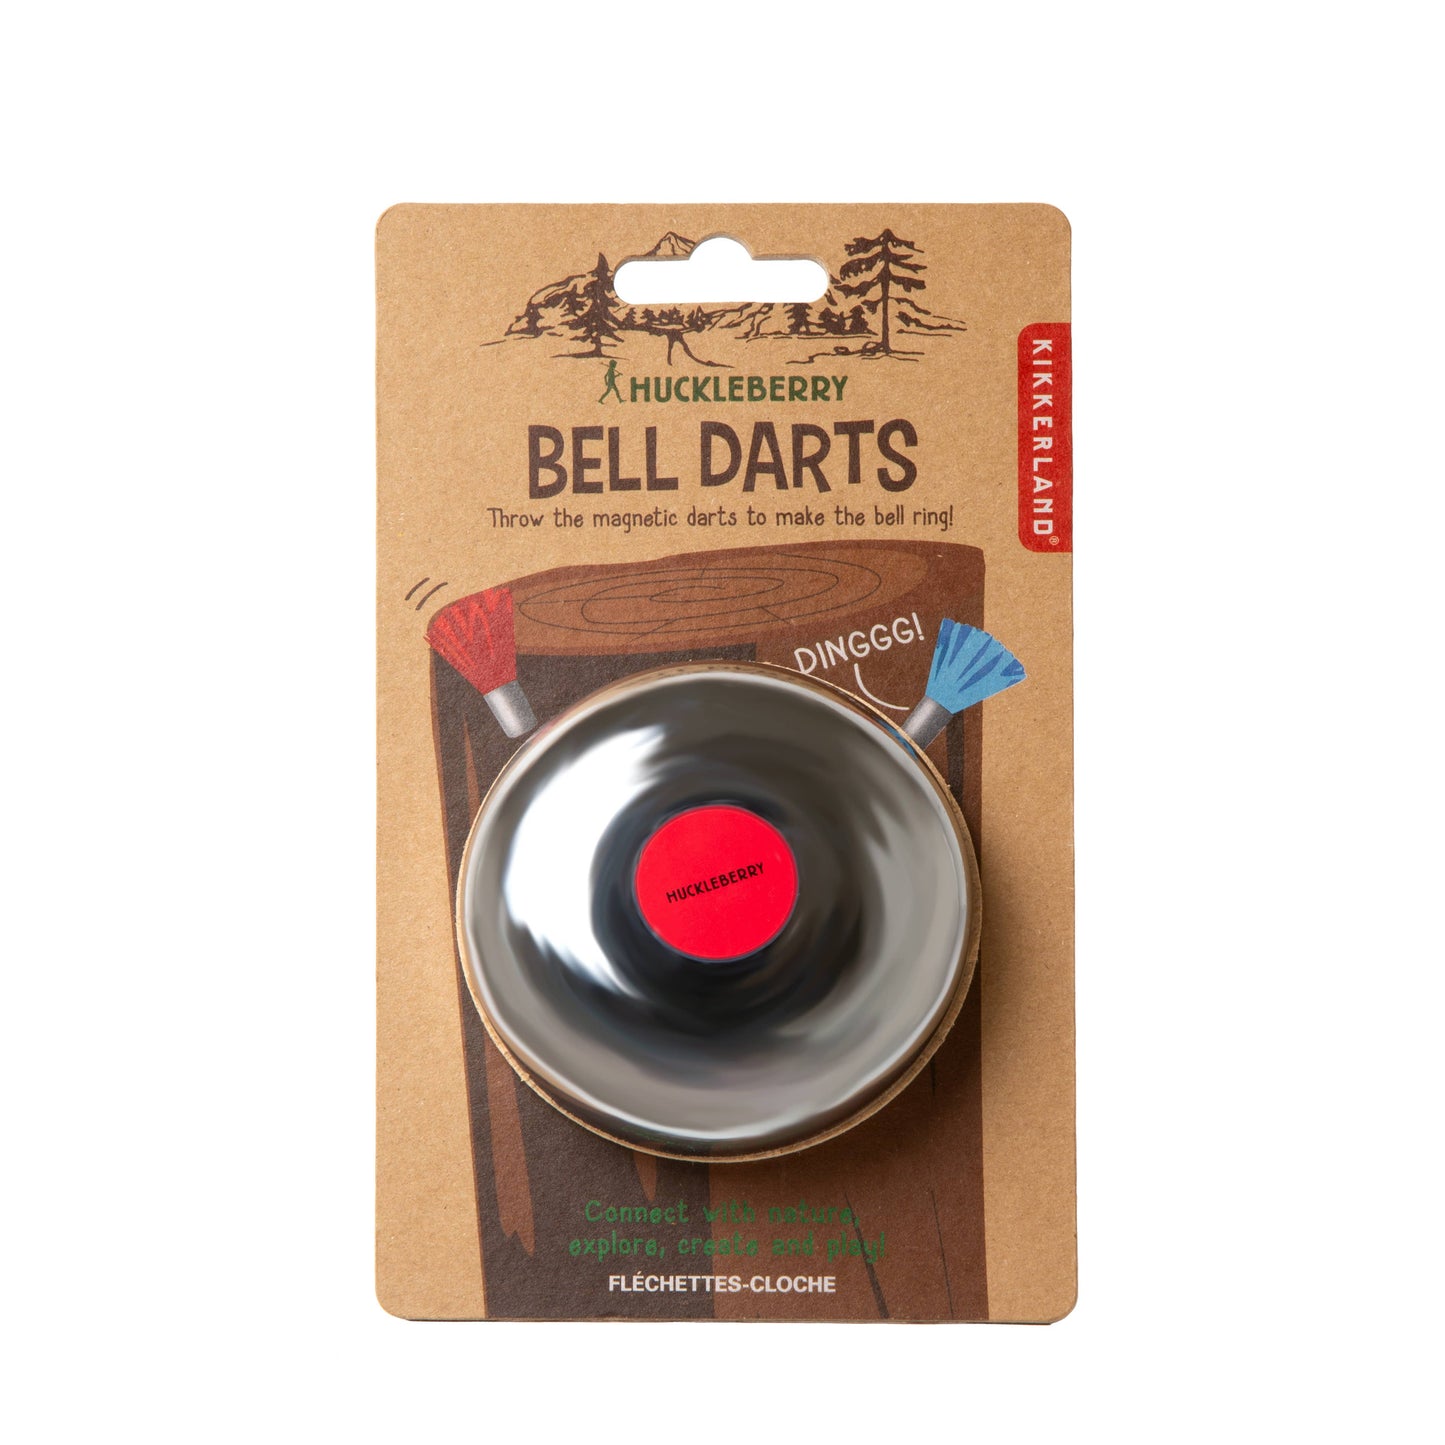 Huckleberry Bell Darts - Einstein's Attic